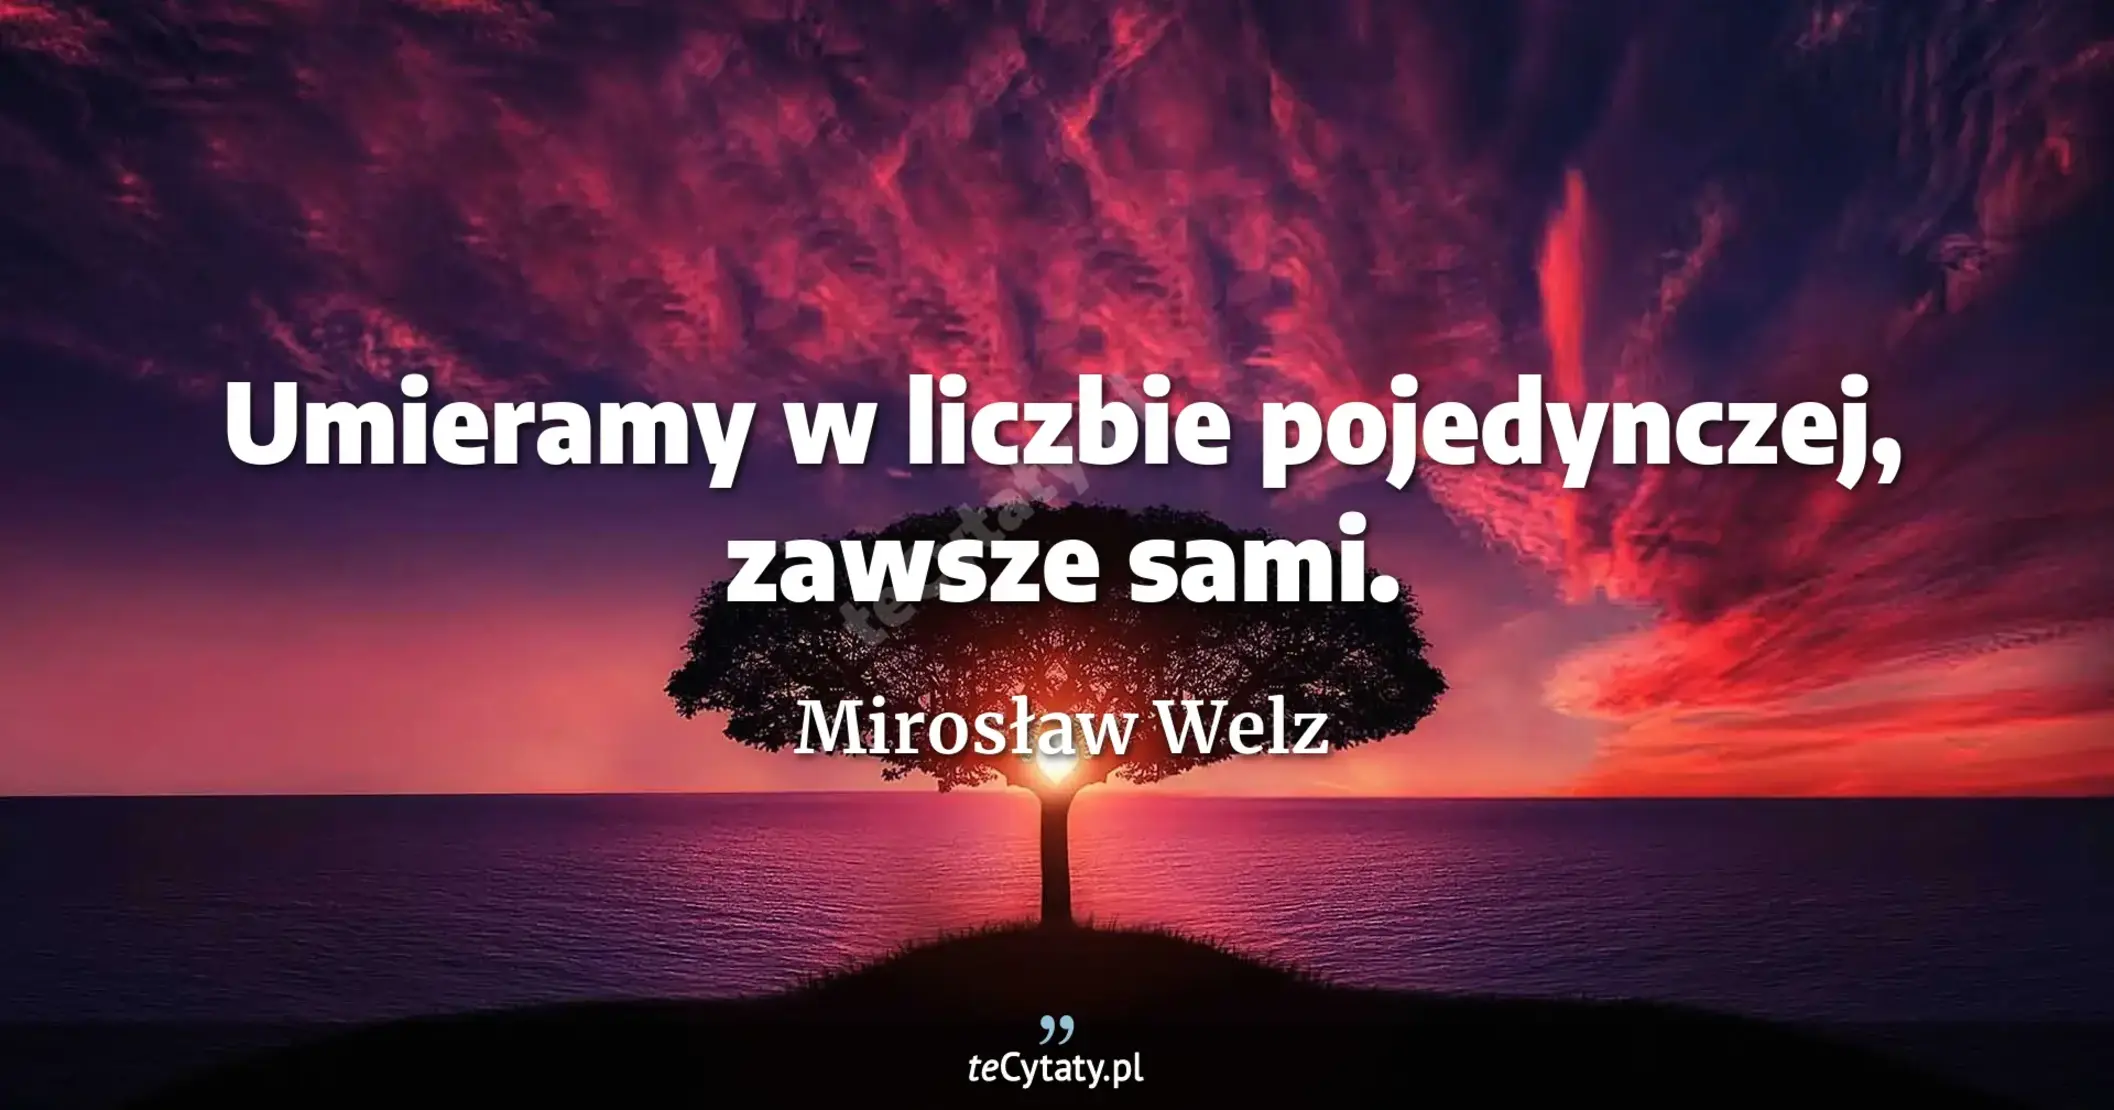 Umieramy w liczbie pojedynczej, zawsze sami. - Mirosław Welz